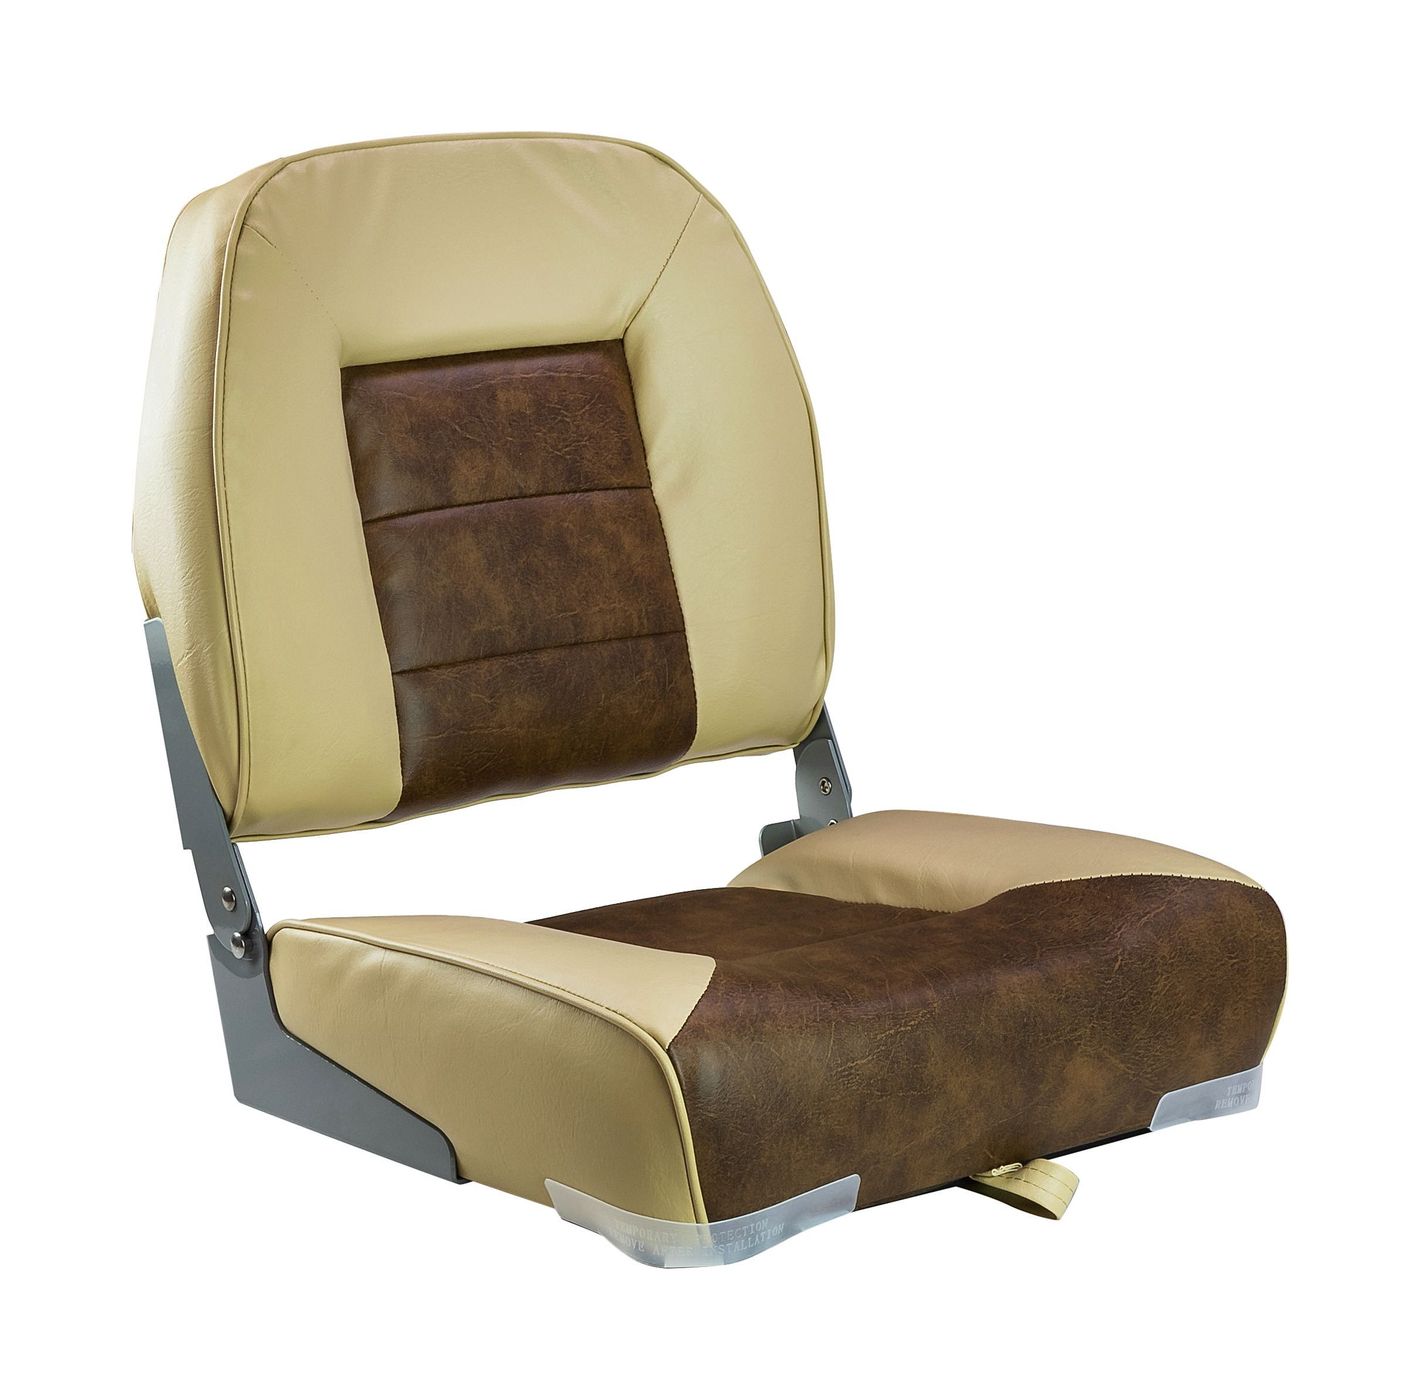 Кресло складное мягкое, обивка винил, цвет песочный/коричневый, Marine Rocket 75121SB-MR